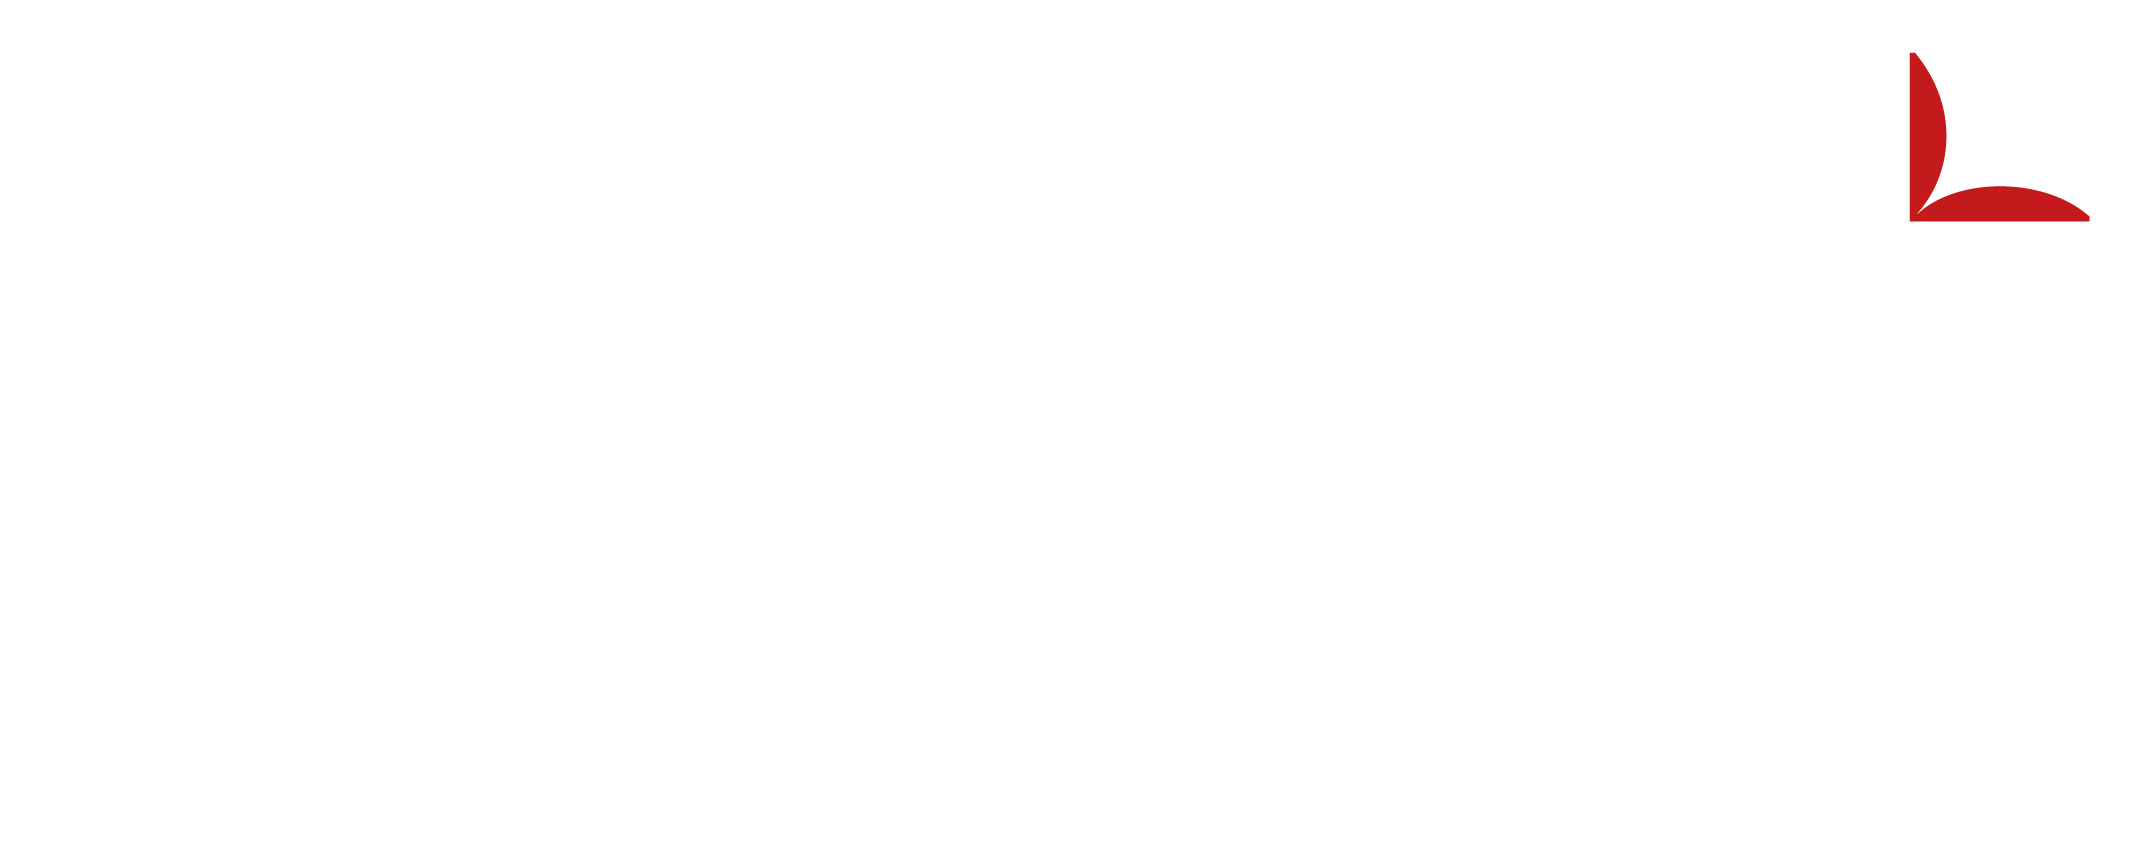 Edleman Logo - Gerald Edelman